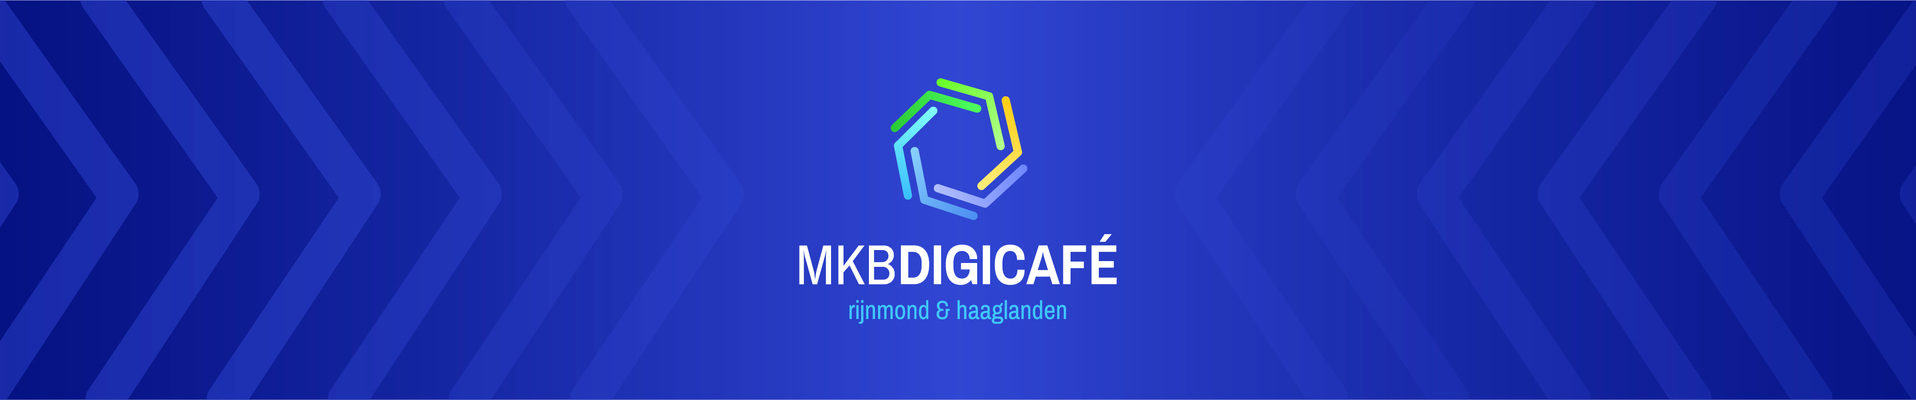 MKB Digicafé: Online klantcontact